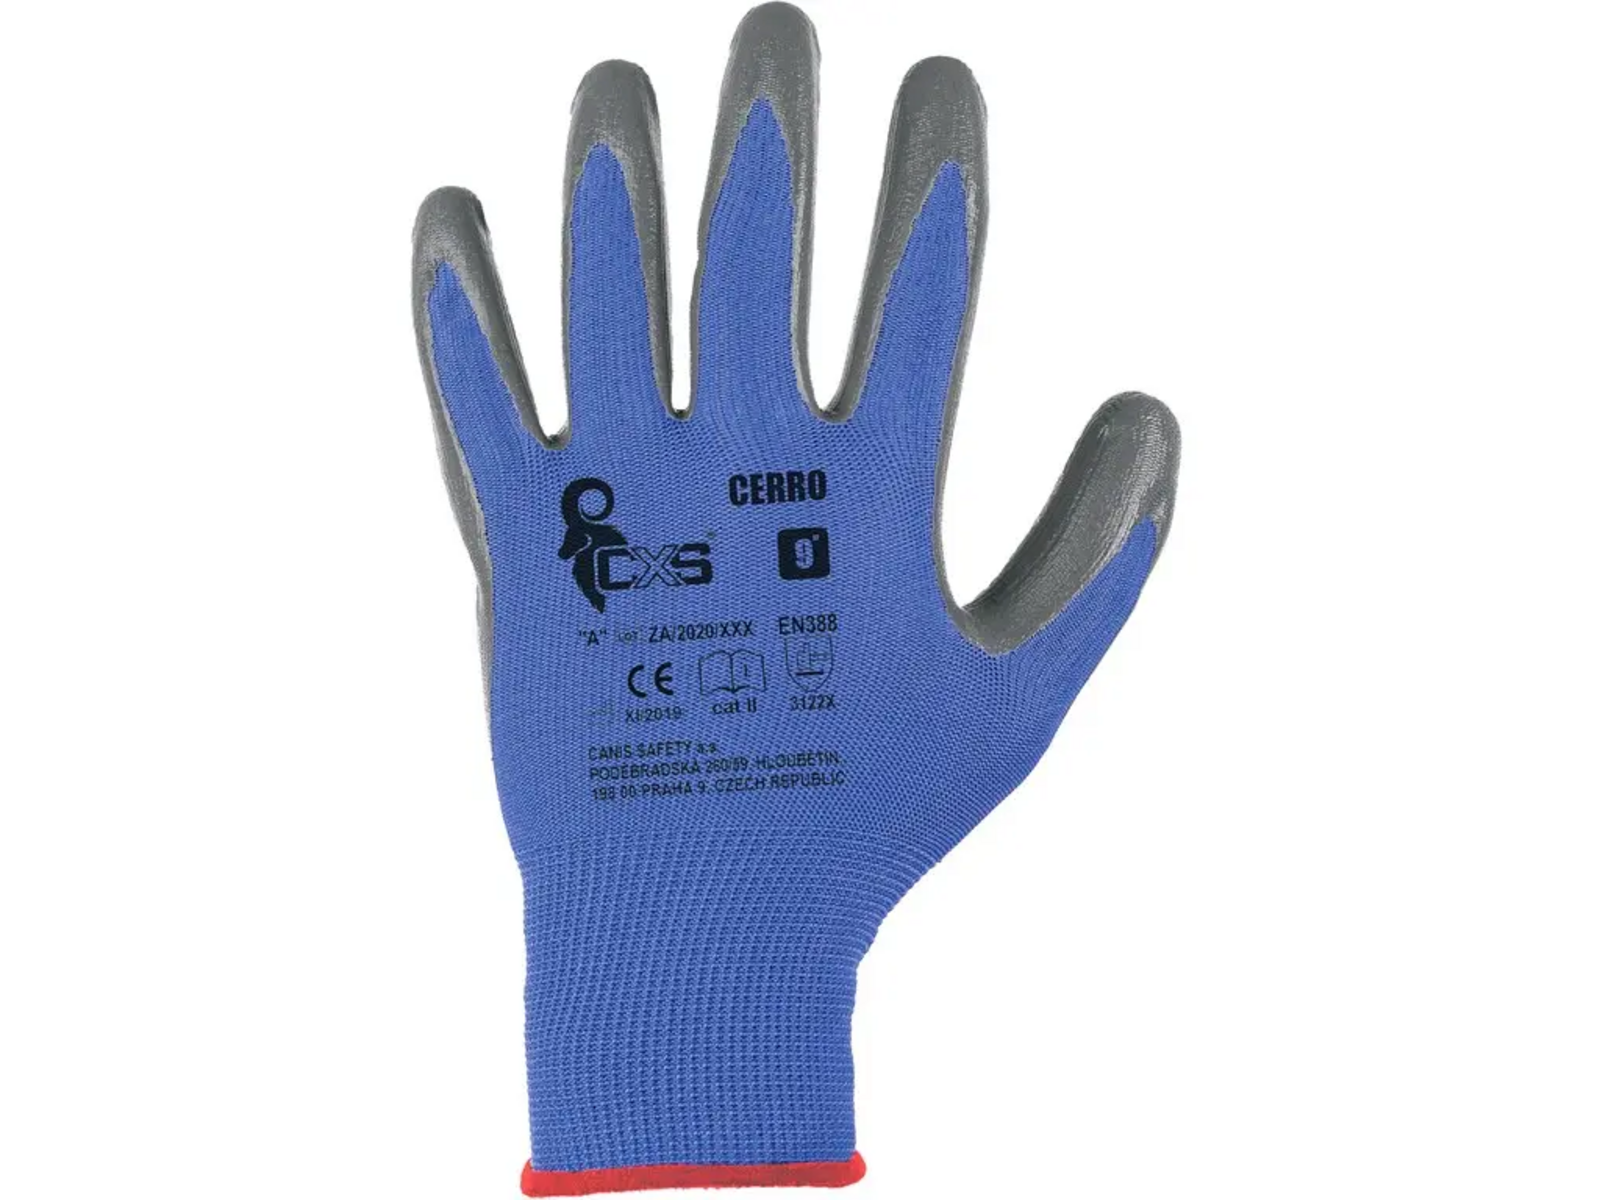 Povrstvené rukavice CXS Cerro - veľkosť: 11/XXL, farba: modrá/sivá